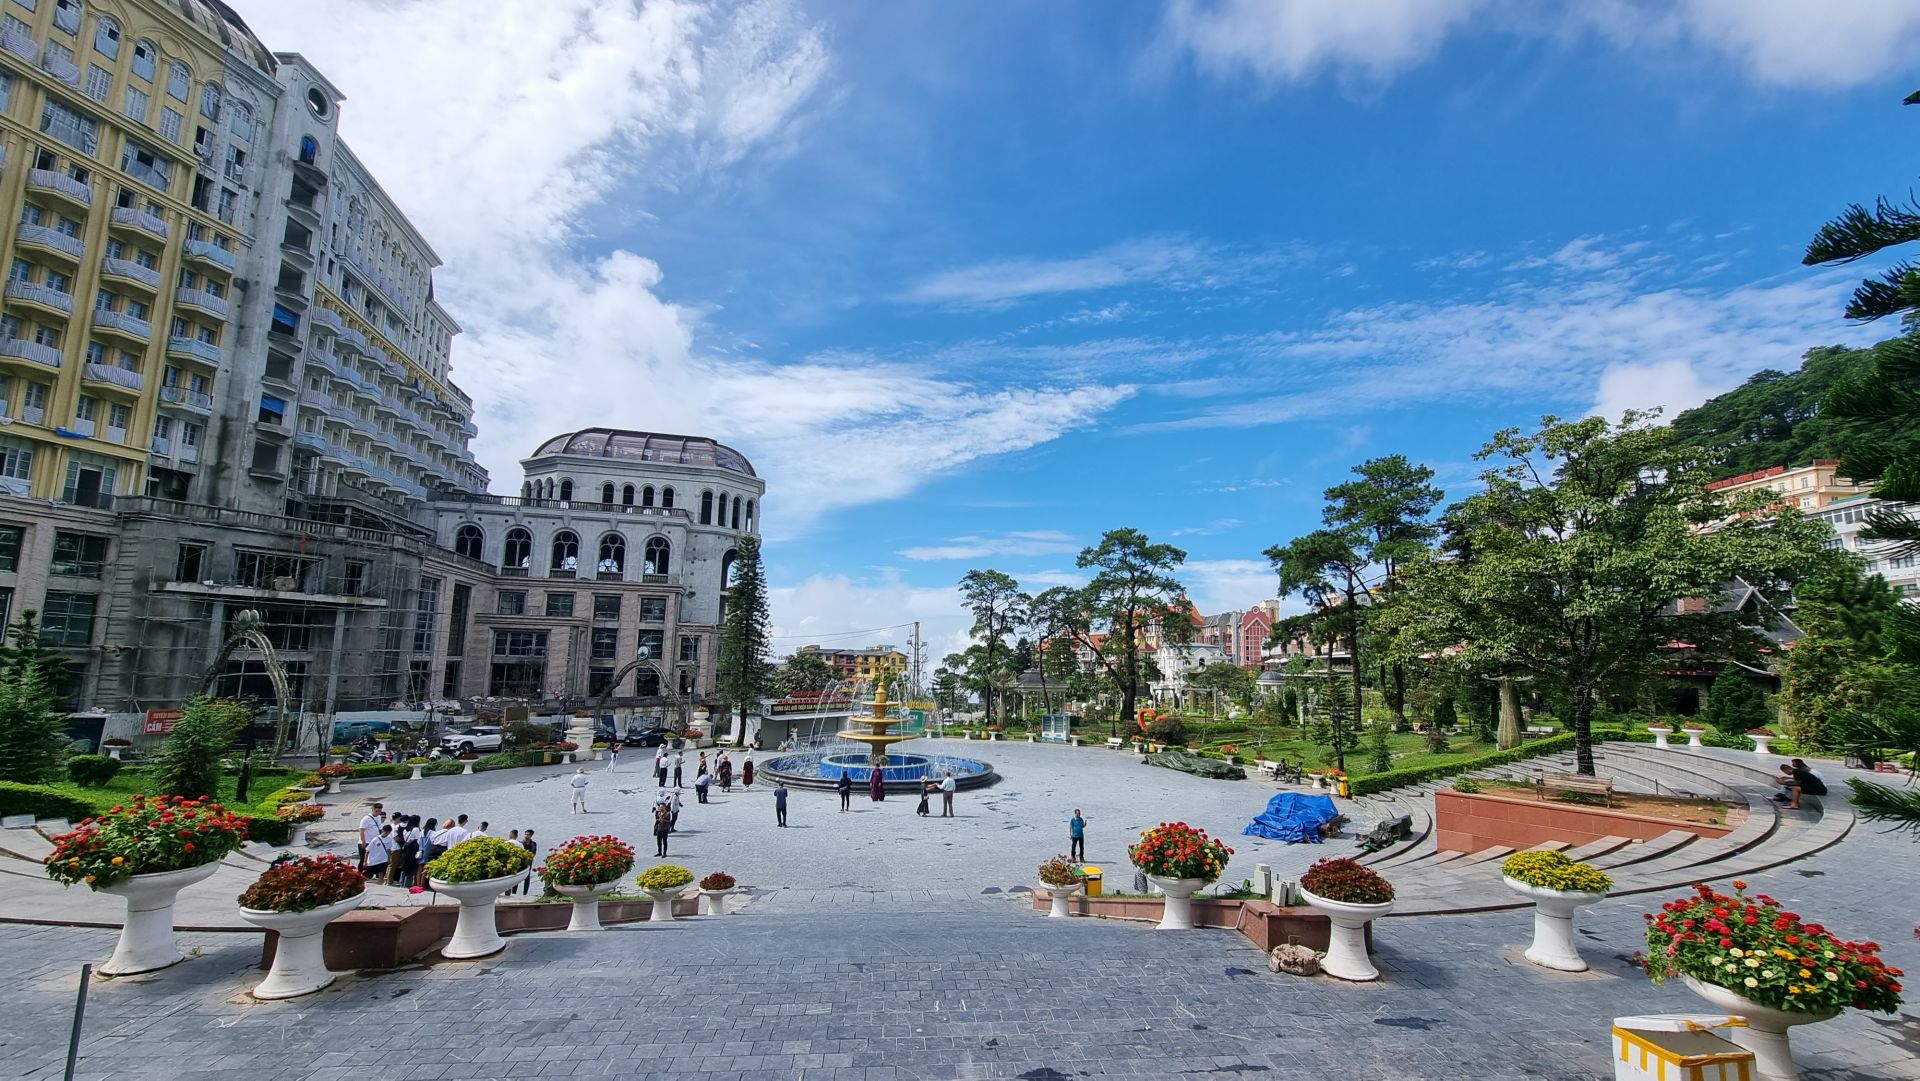 Gợi ý 7 điểm du lịch gần Hà Nội cho kỳ nghỉ hè thuận tiện với người Thủ đô 54